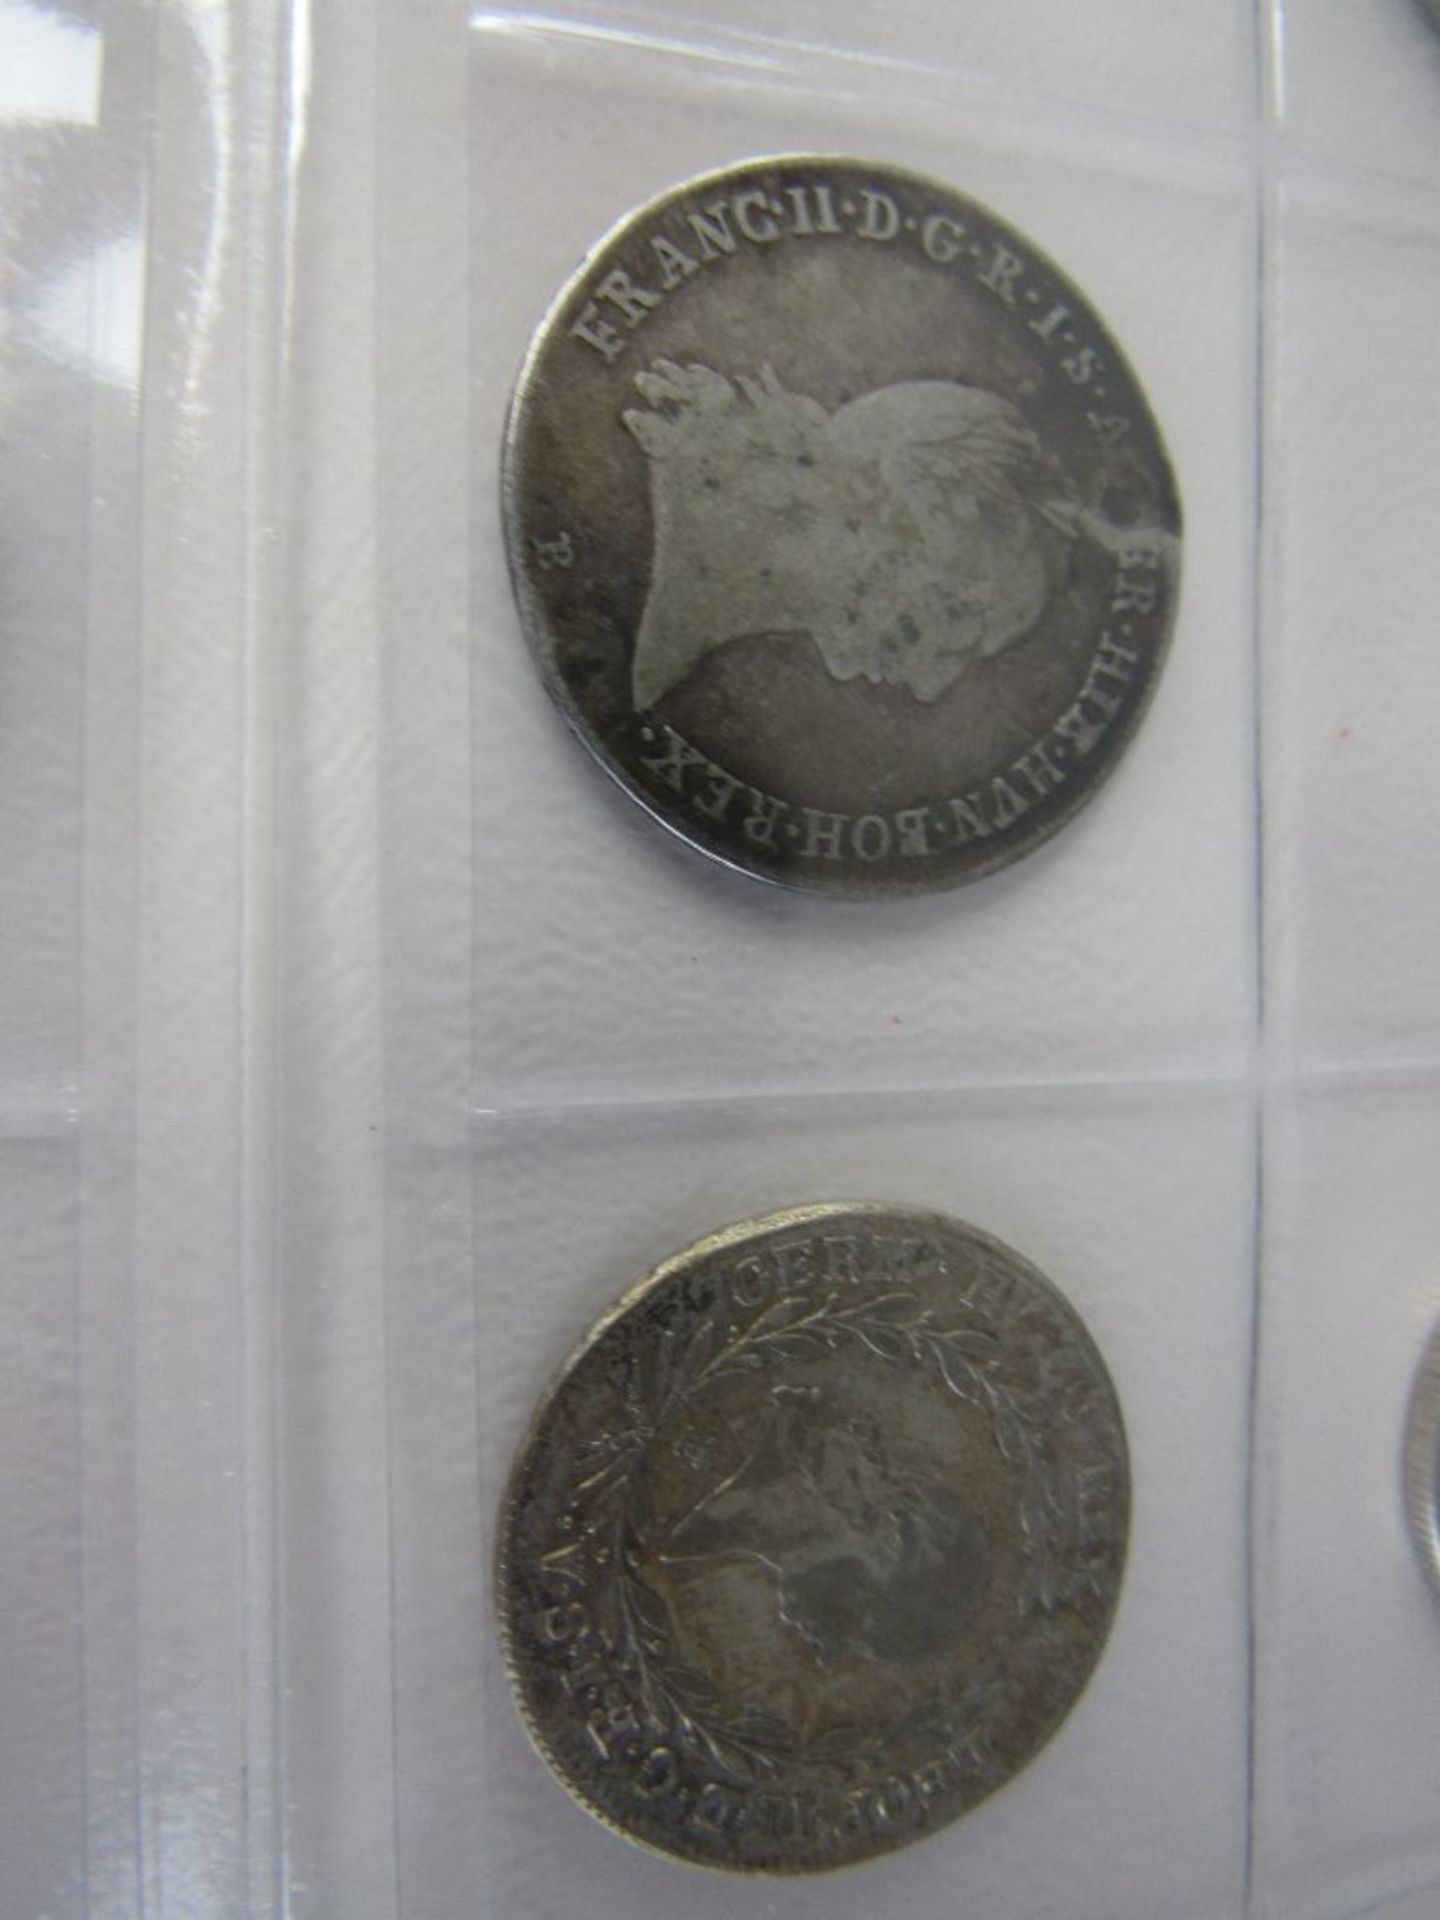 1 Münzalbum mit alten Silbermünzen - Image 7 of 8